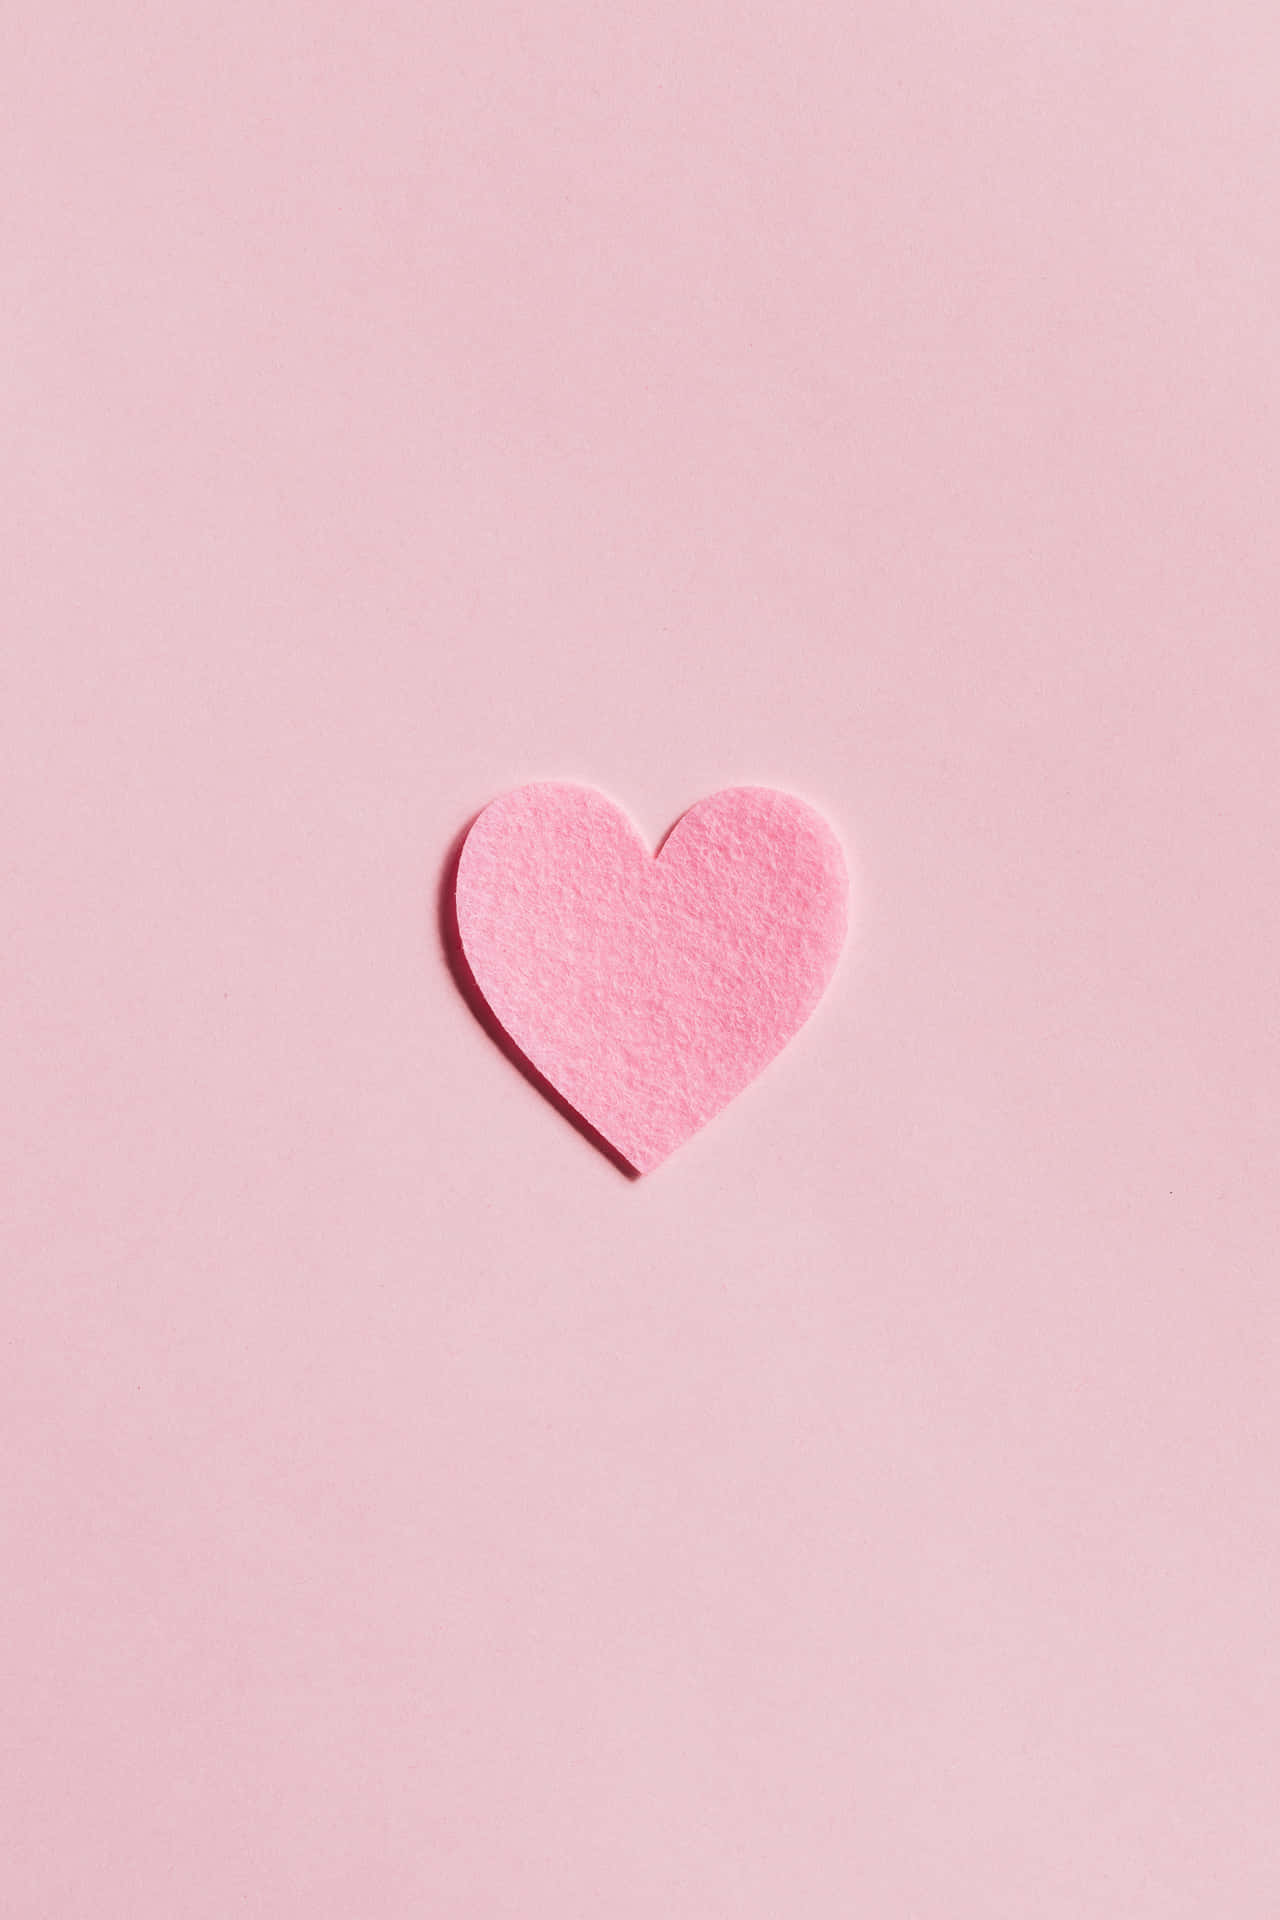 Soft Pink Heart Wallpaper